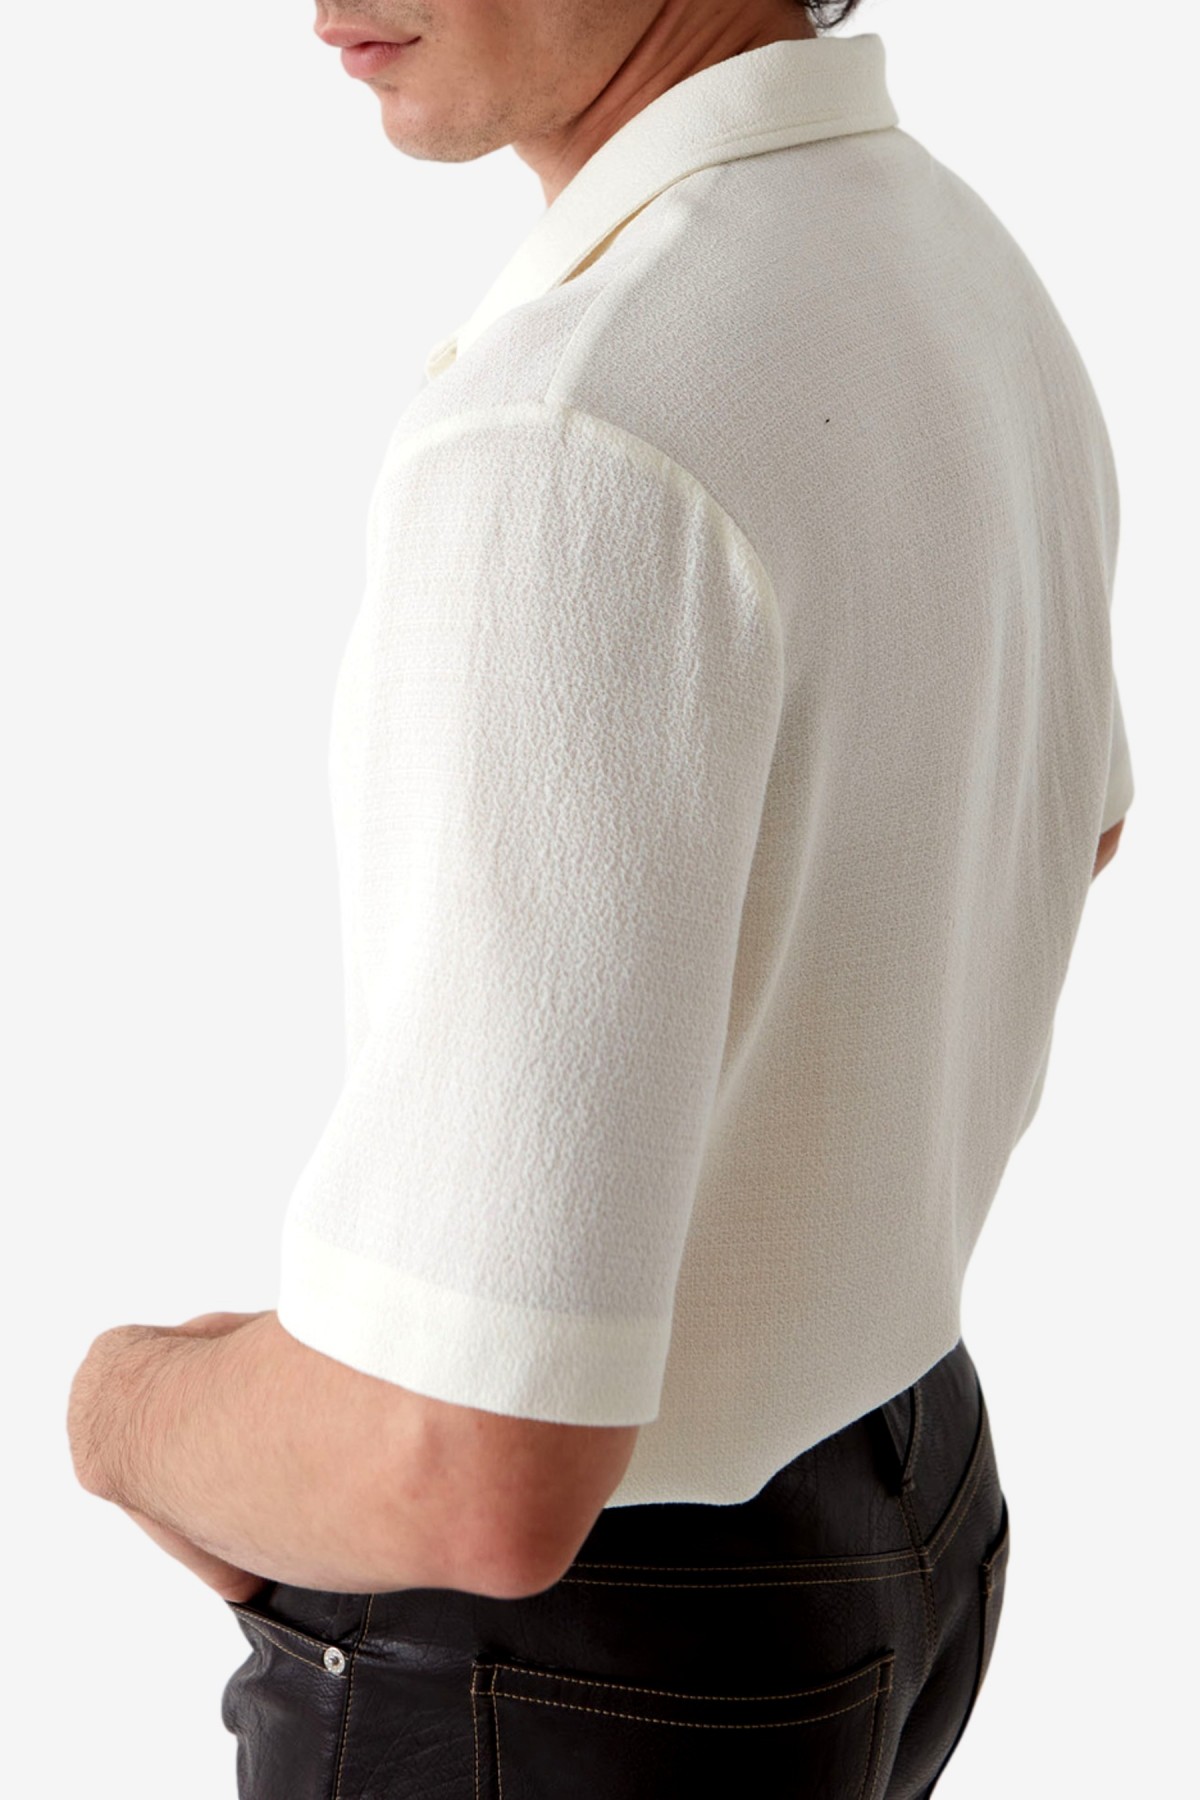 Séfr Suneham Shirt in Off White